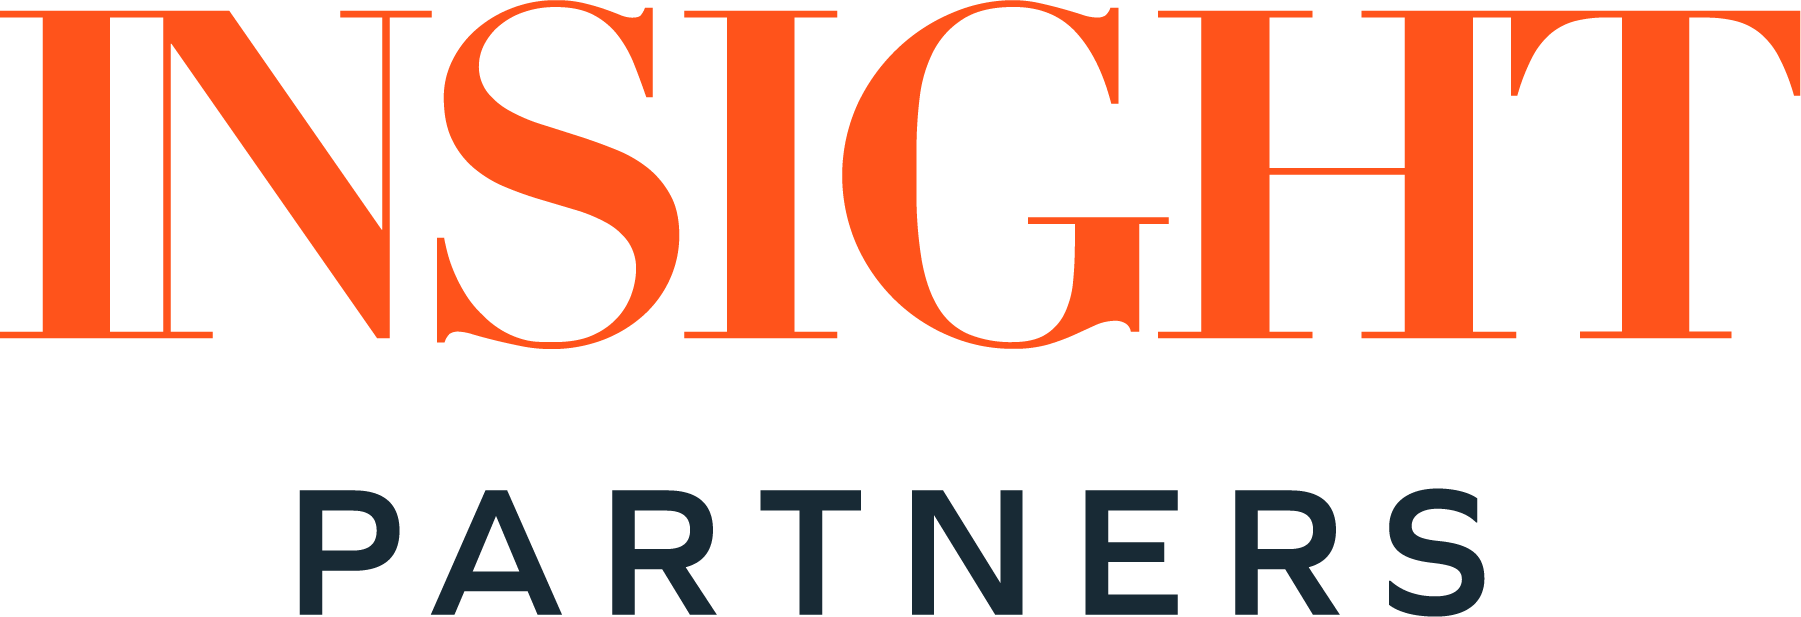 IP-logo-orange-grey-rgb